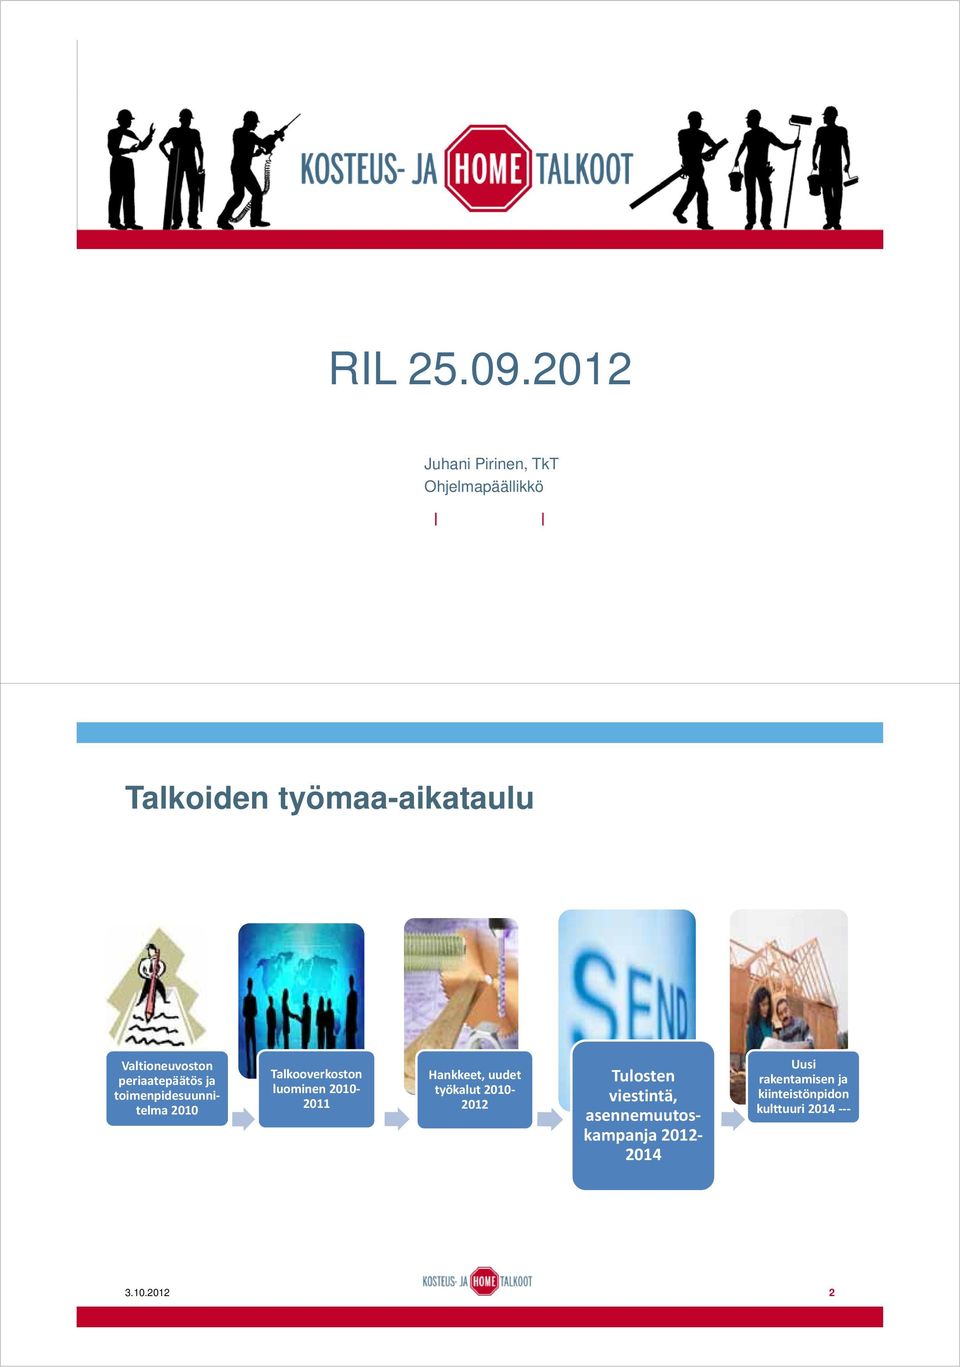 Valtioneuvoston periaatepäätös ja toimenpidesuunnitelma 2010 Talkooverkoston